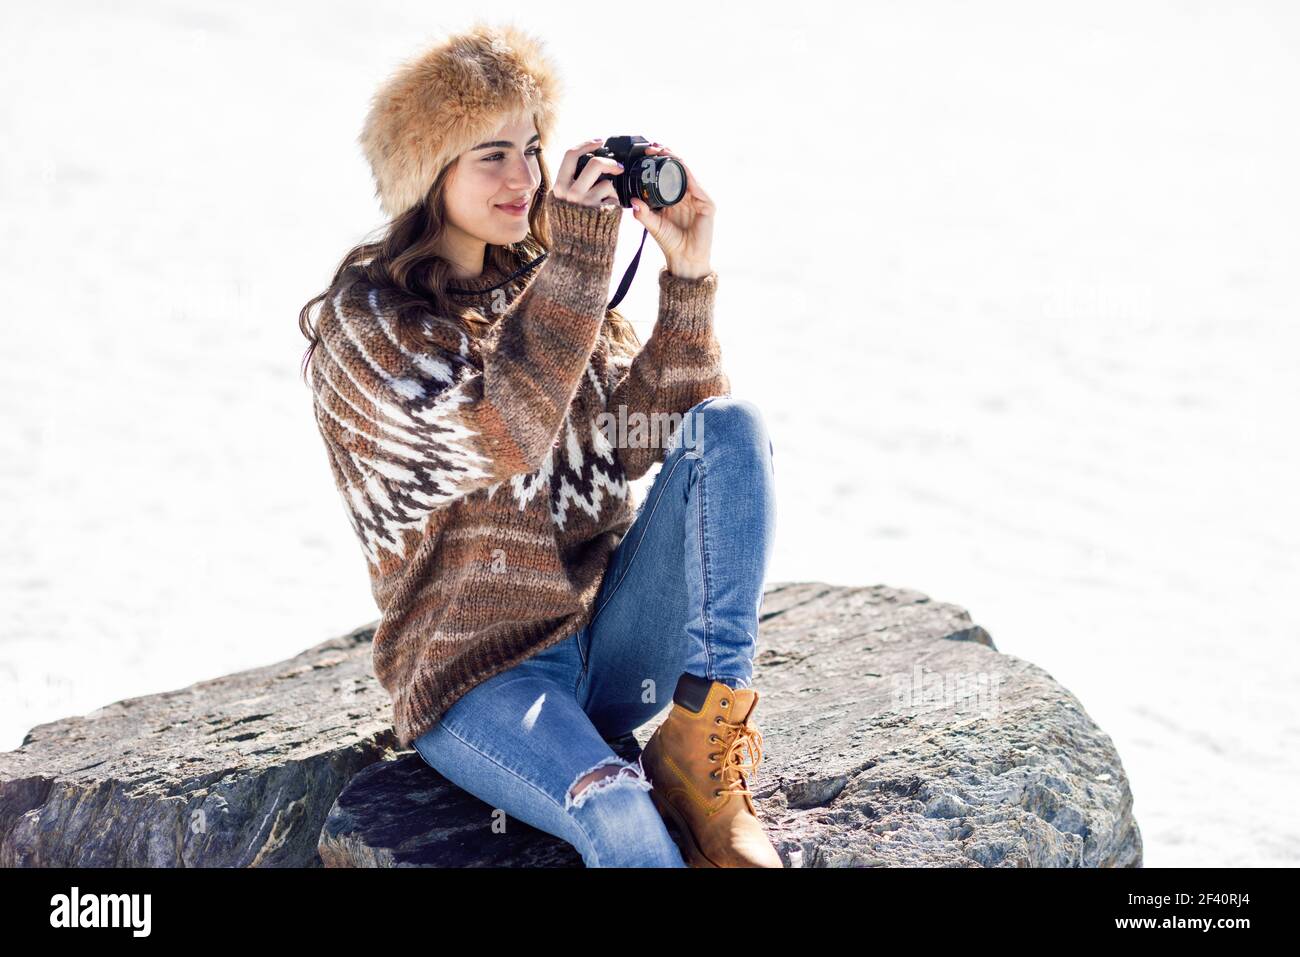 Junge Frau, die im Winter in den verschneiten Bergen fotografiert, in der Sierra Nevada, Granada, Spanien. Frau trägt Winterkleidung. Junge Frau fotografiert in den verschneiten Bergen Stockfoto